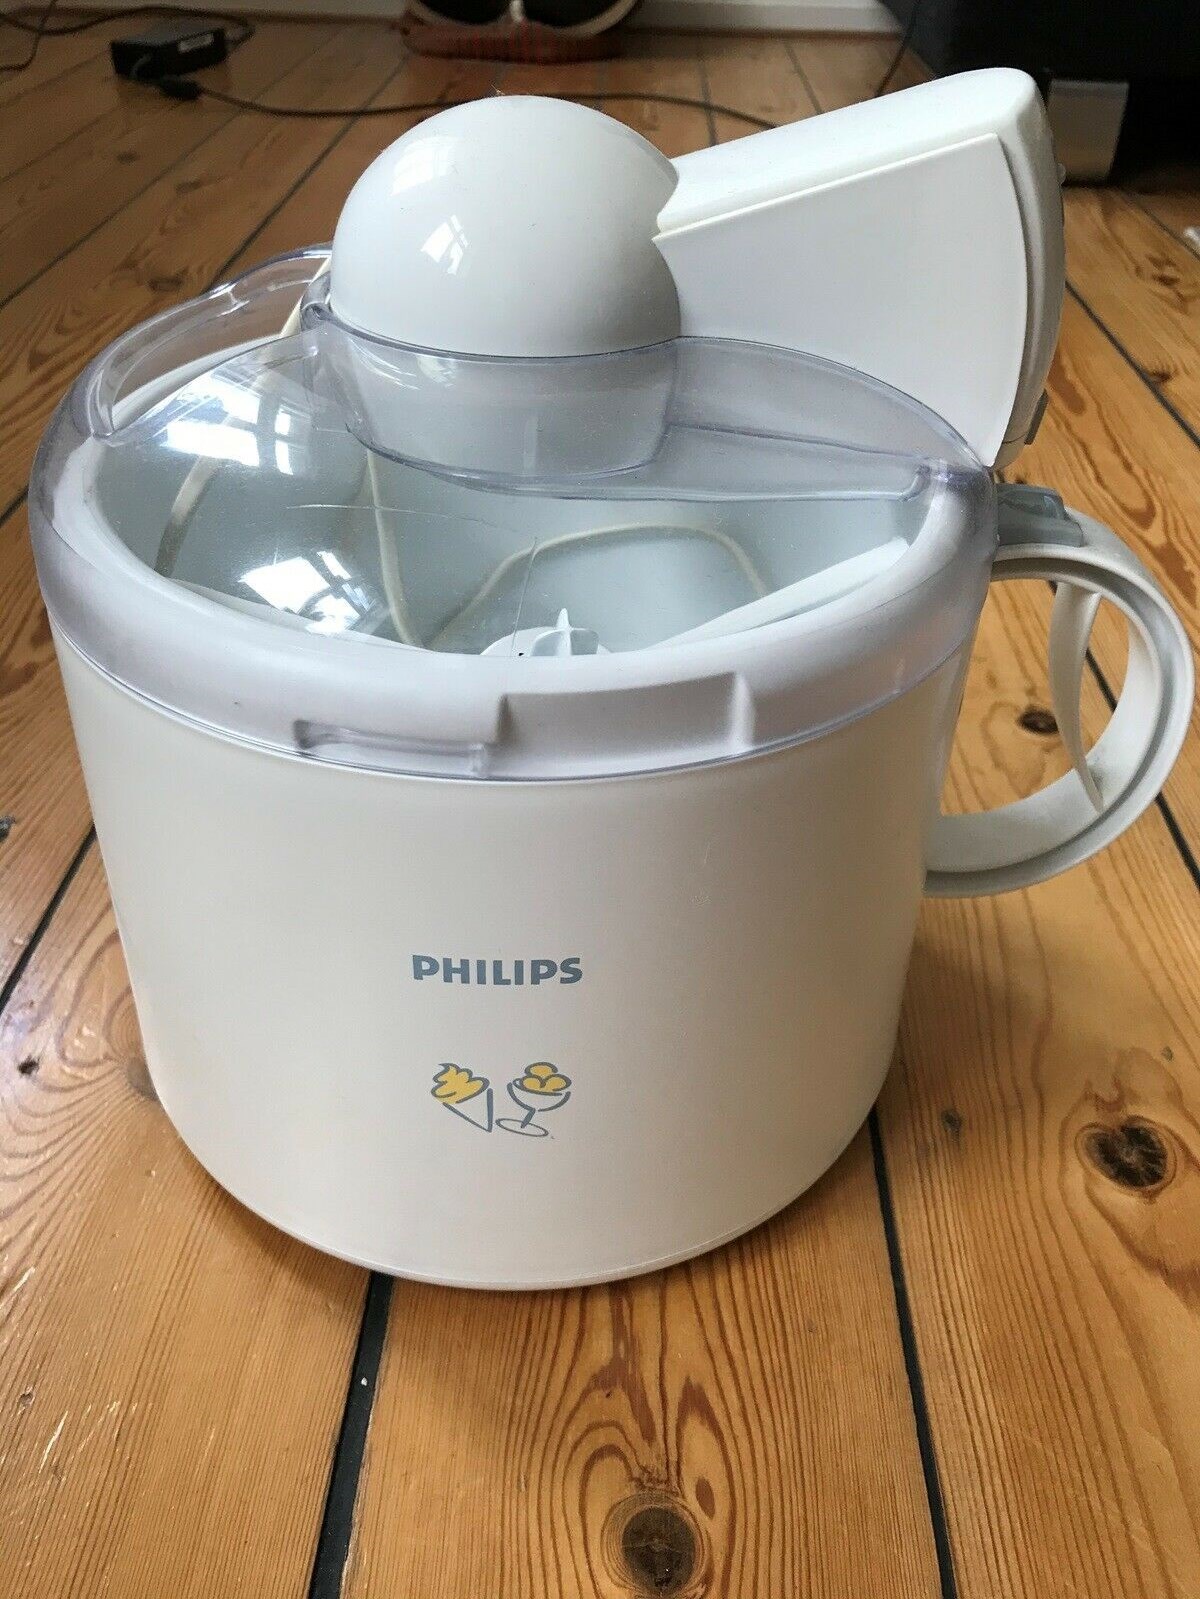 Vil du lave din egen is? Lige nu har Michael fra København denne Philips ismaskine til salg for kun 150 kroner, og den har kun kørt få gange.